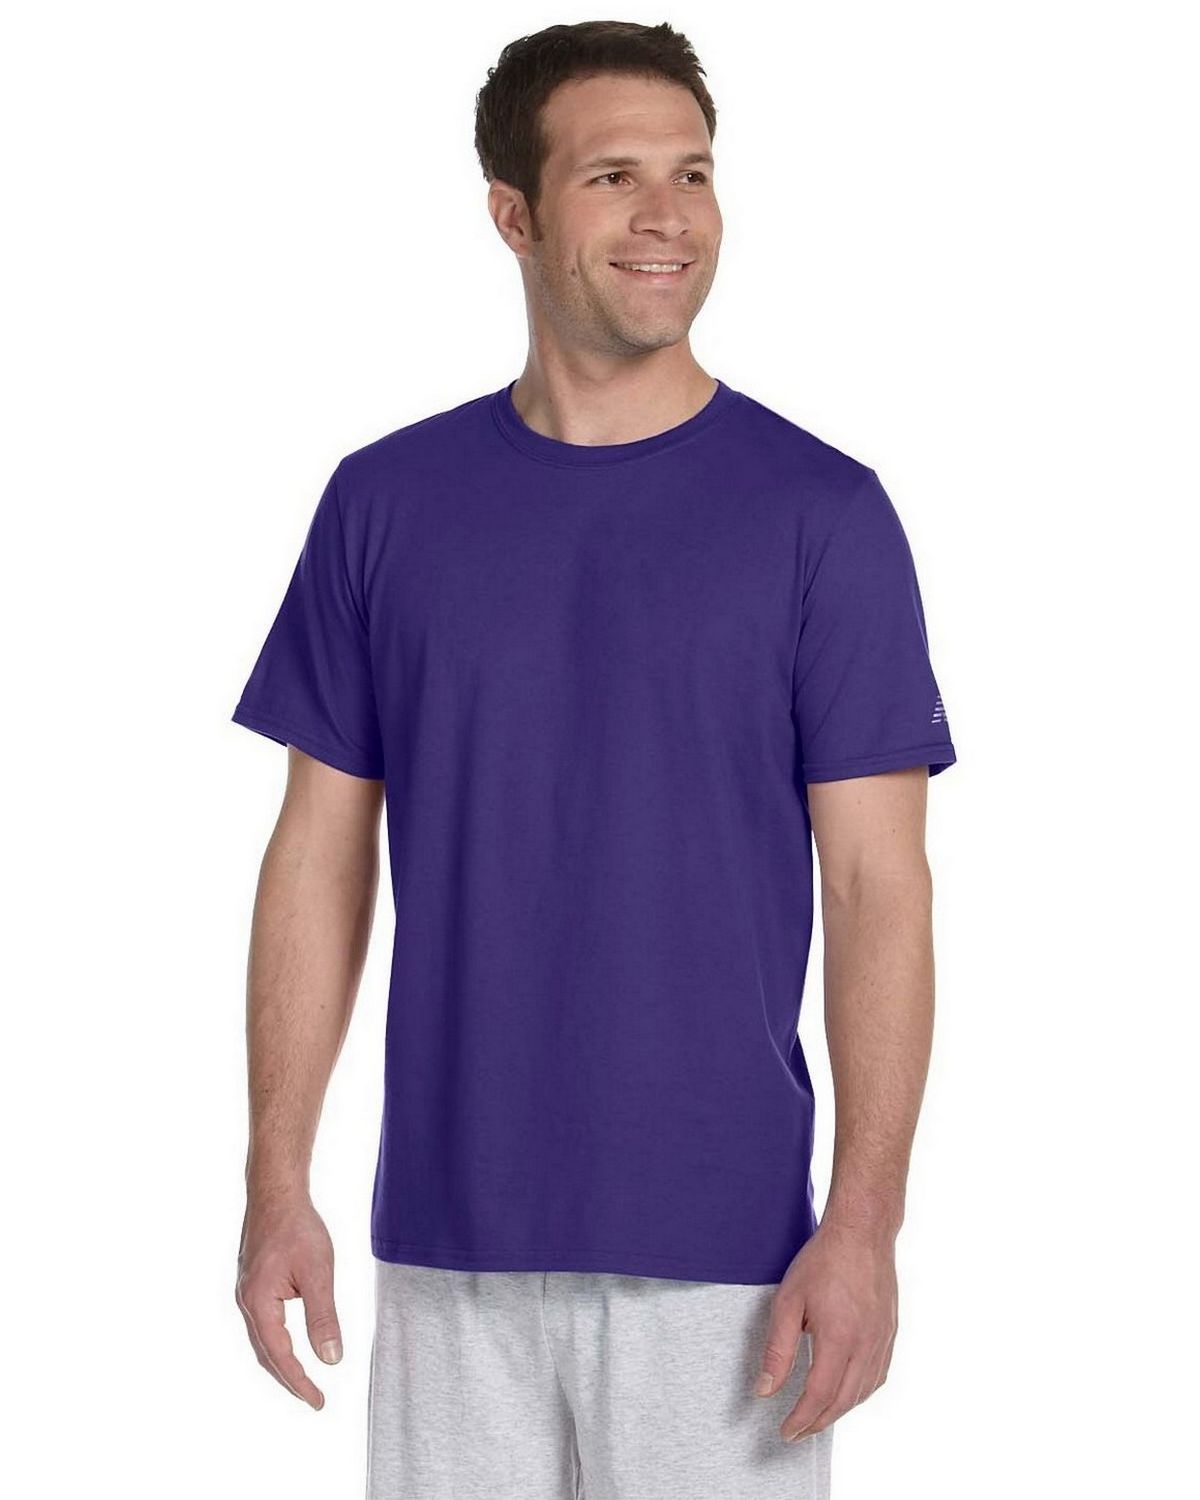 new balance shirts wholesale